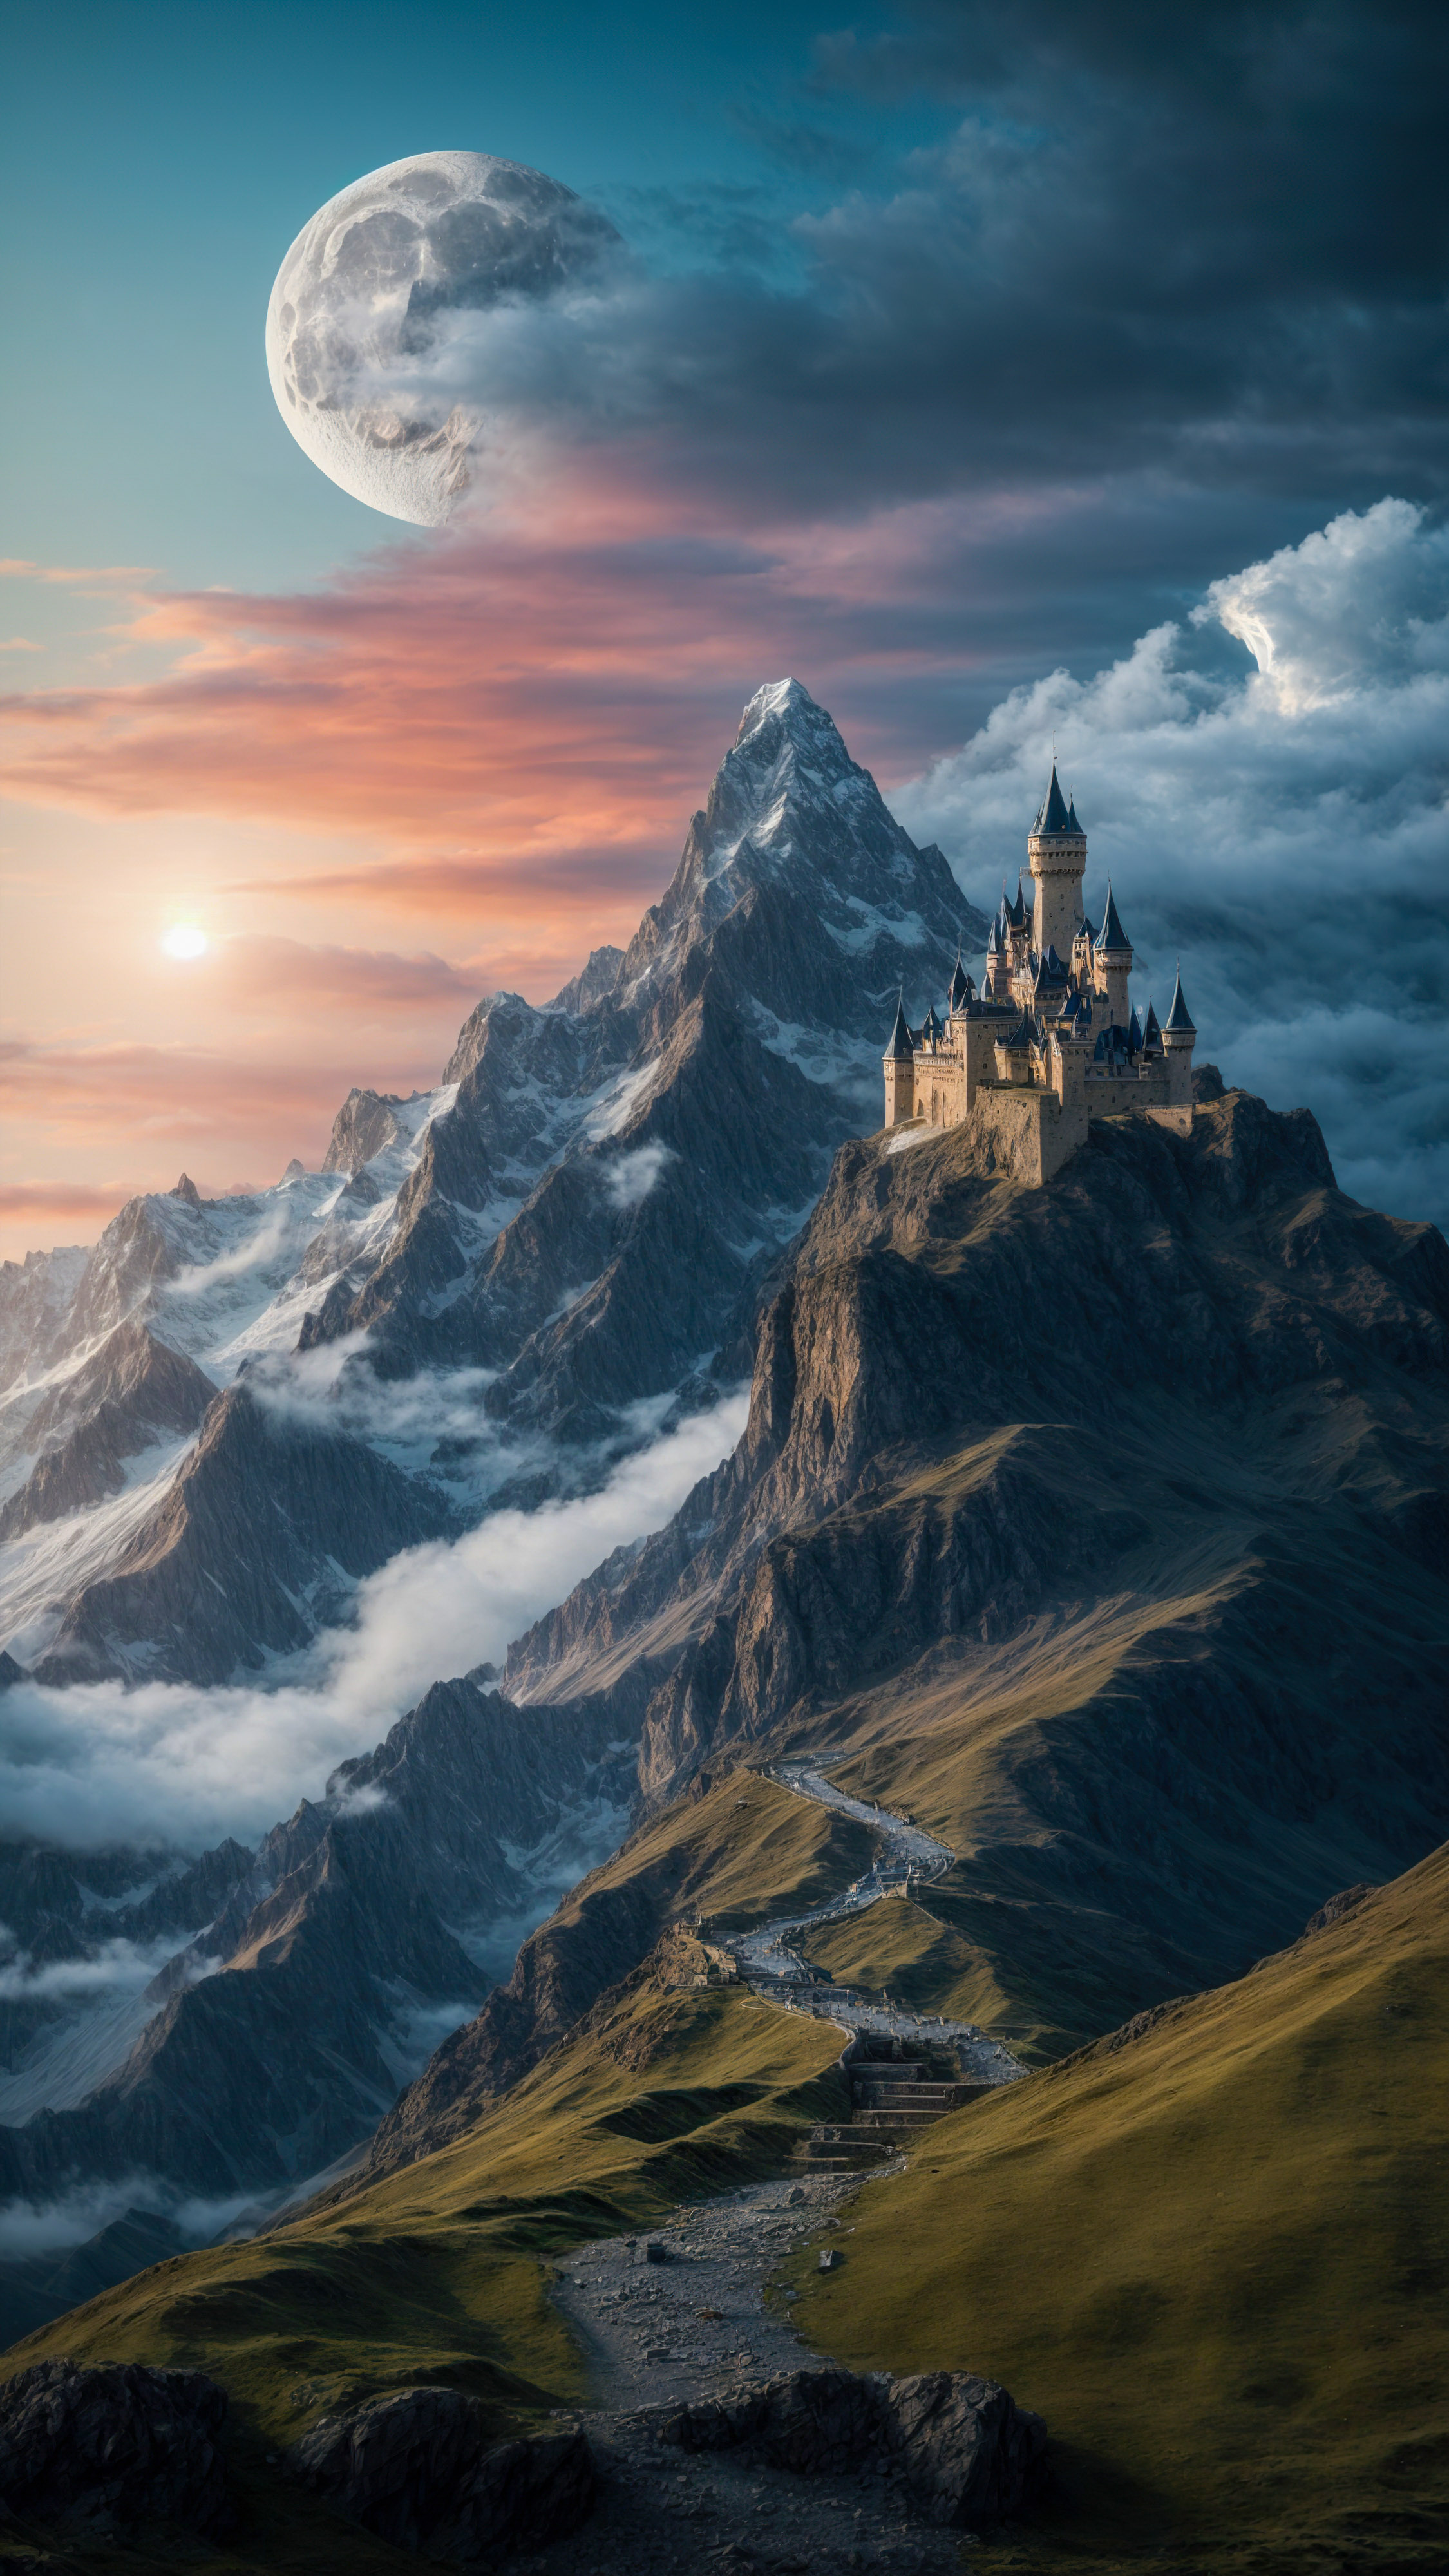 Laissez-vous hypnotiser par des fonds d'écran cool illustrant une montagne fantastique avec un château et un dragon, sous un ciel magique et une lune.